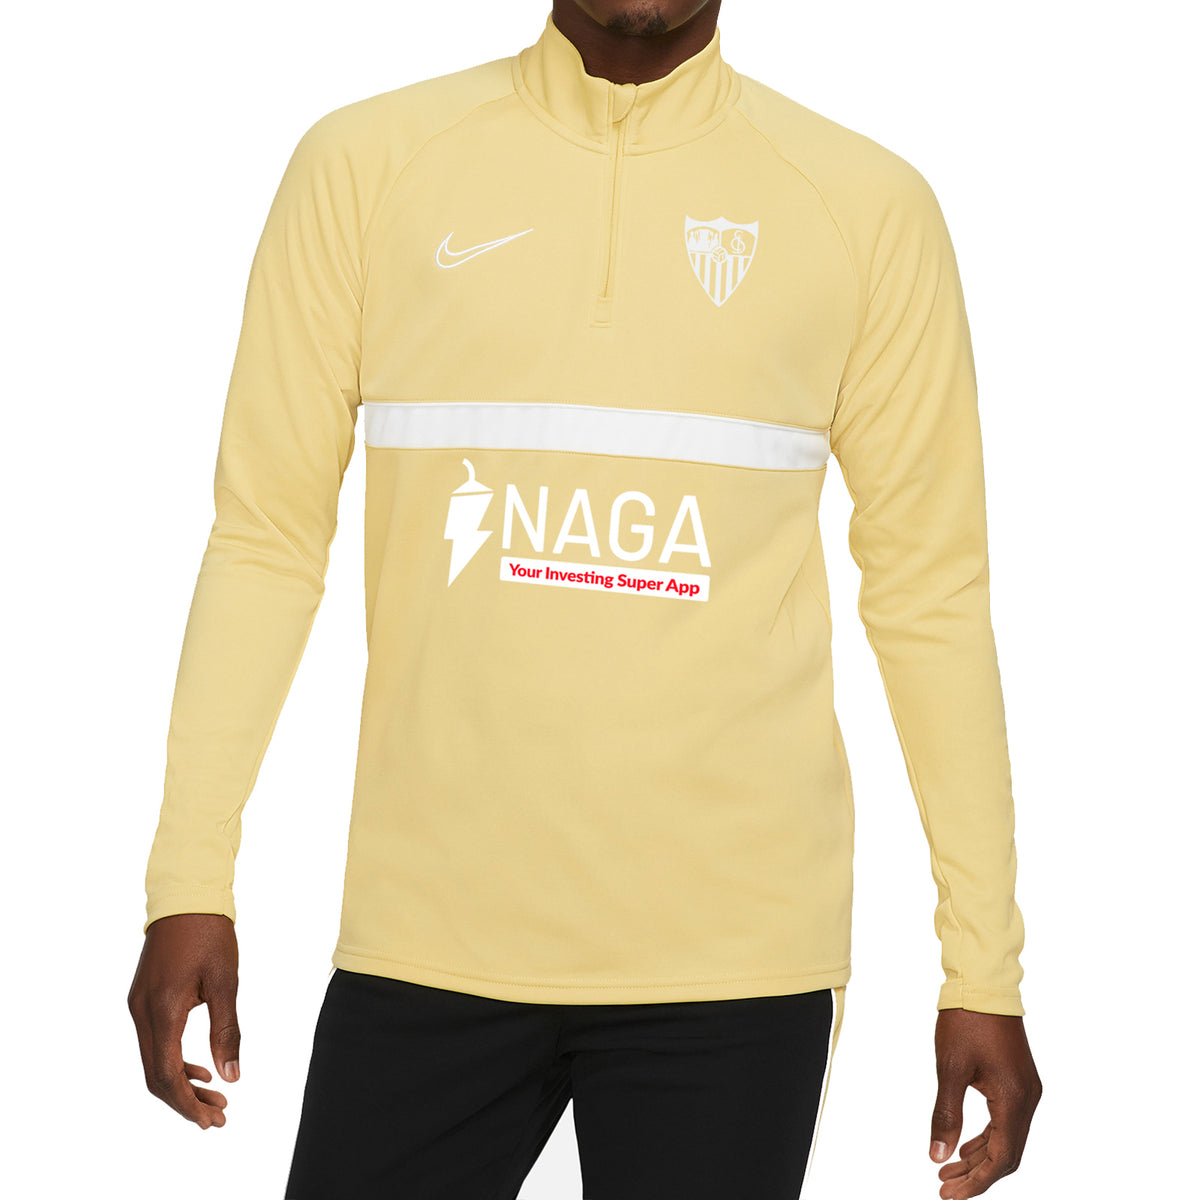 Camiseta Blanca Prematch del Sevilla FC para Niños 21/22